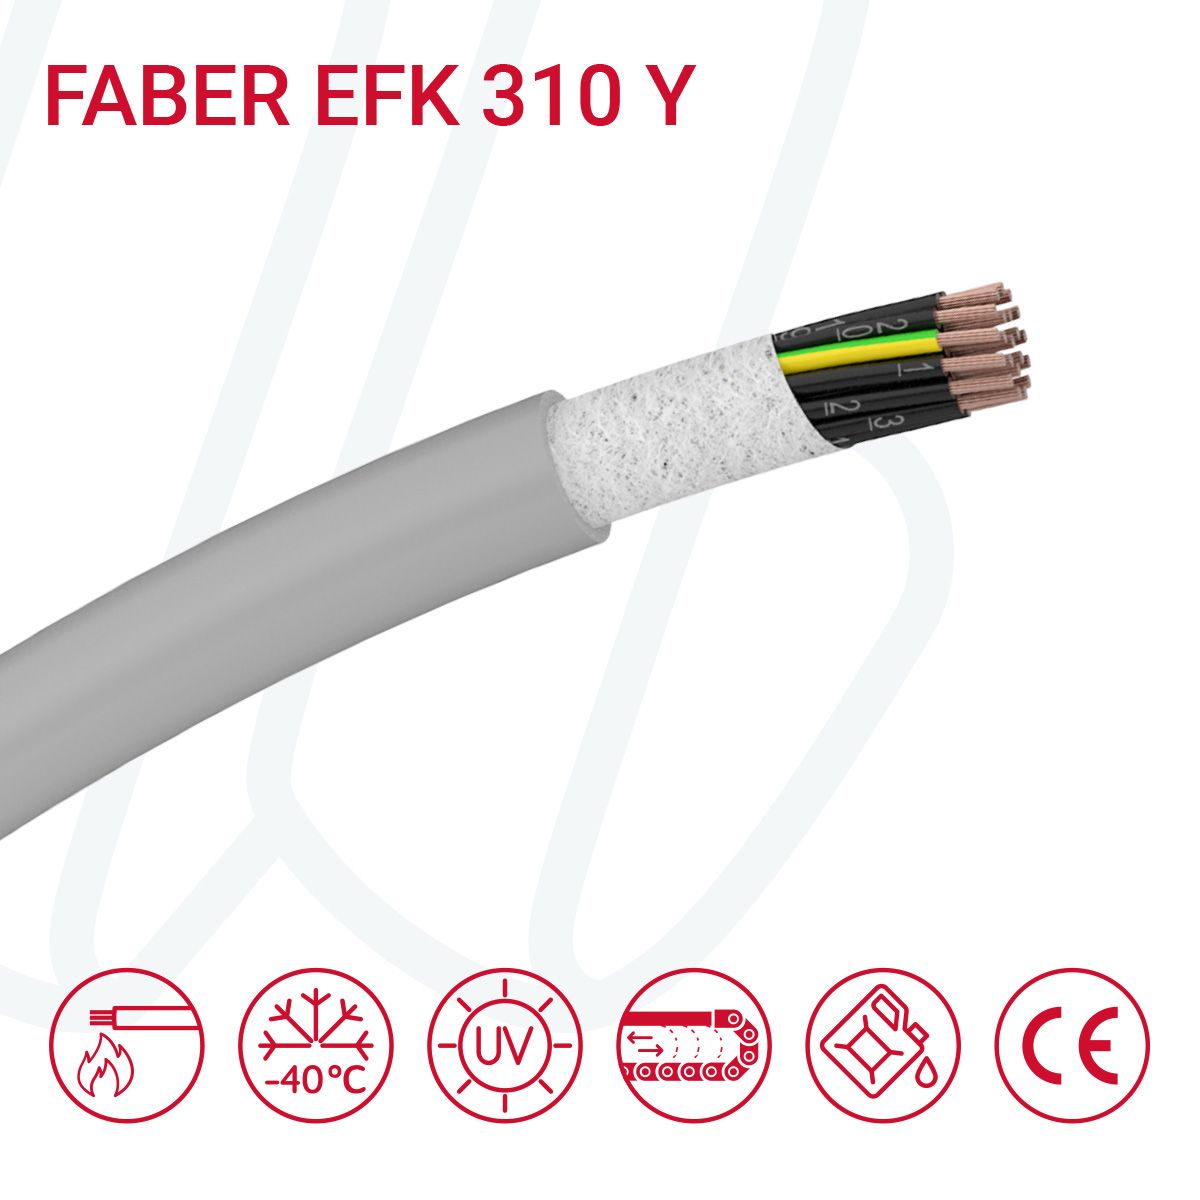 Кабель FABER EFK 310 Y 10G0.5 cUL сірий, 10, 0.5